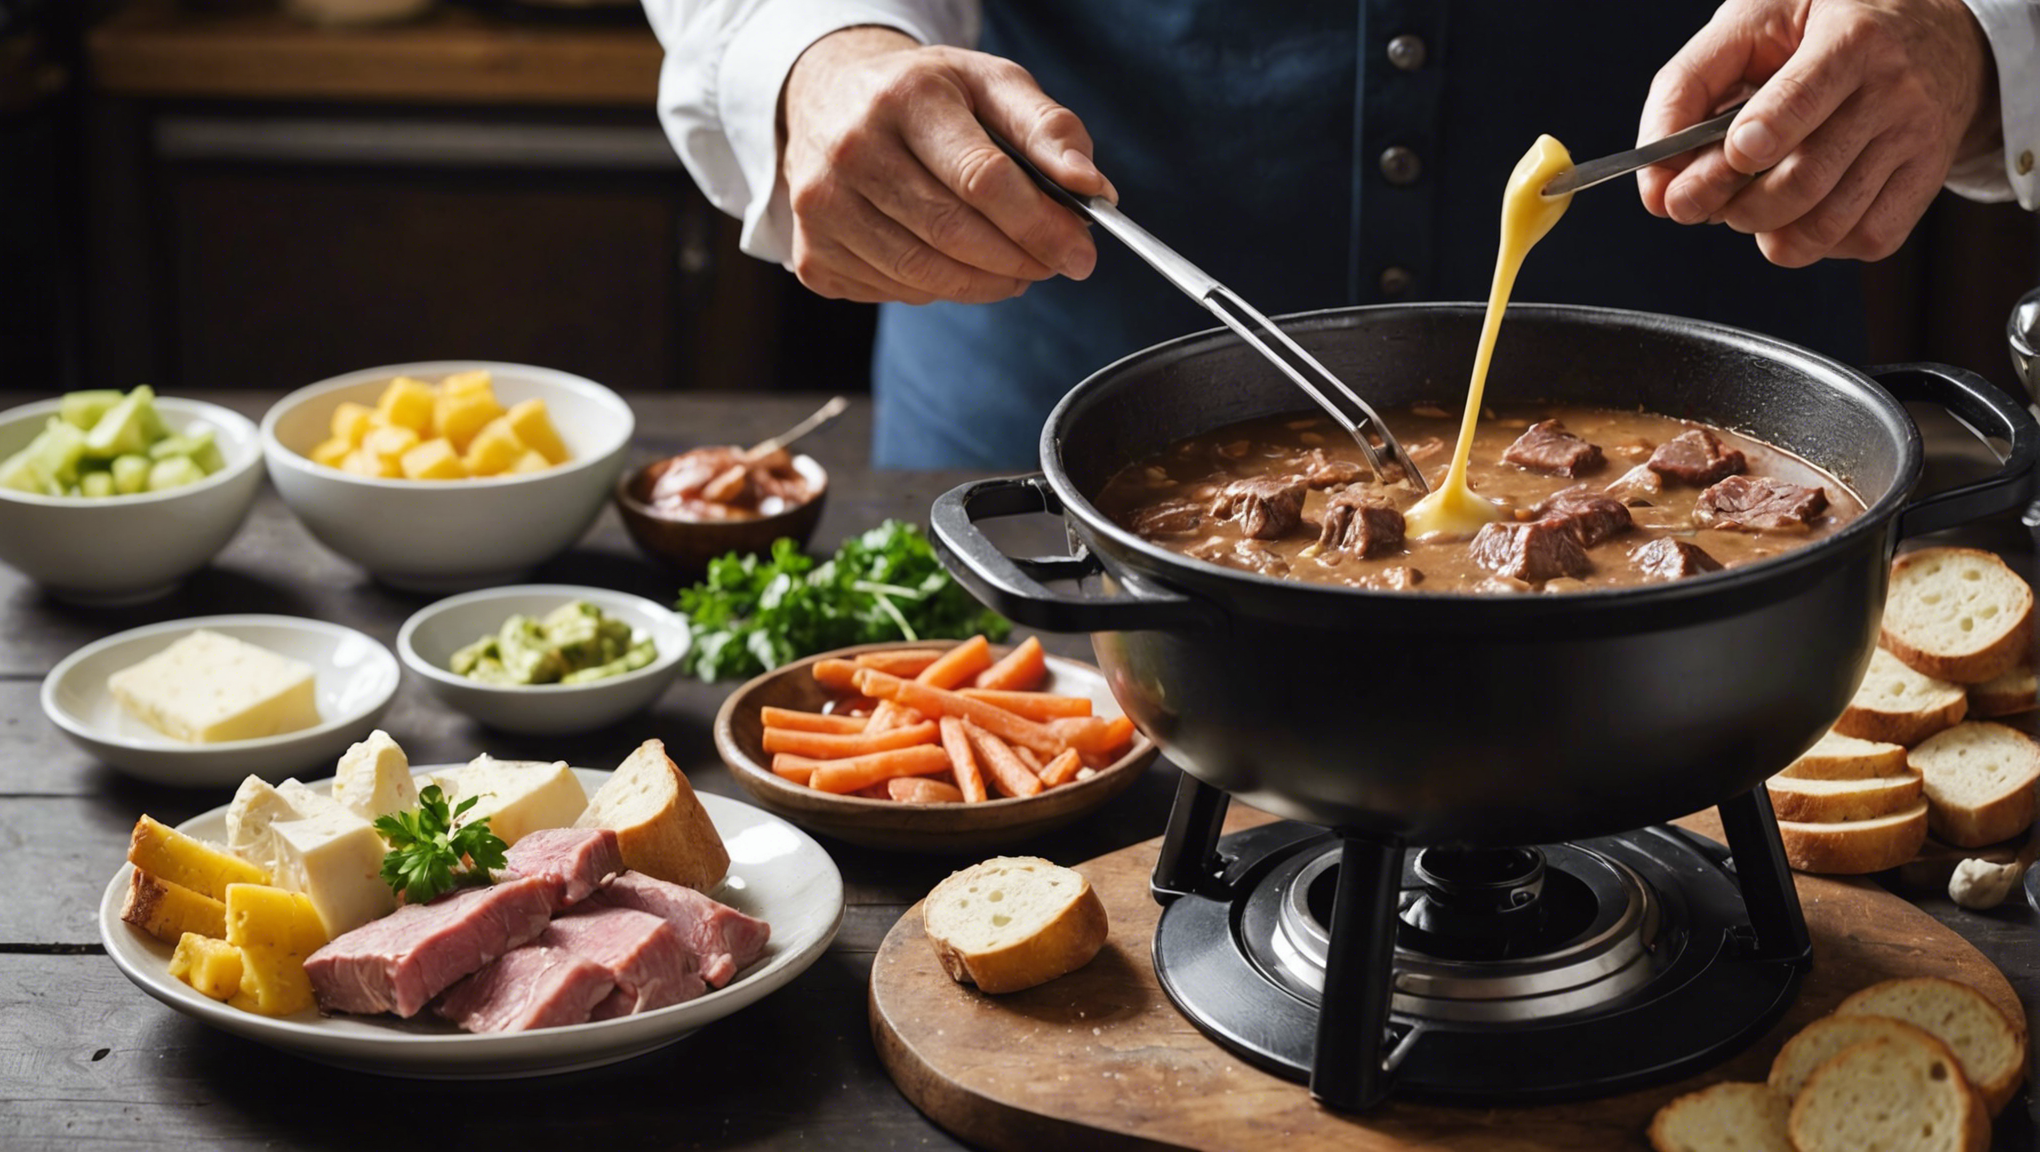 découvrez comment préparer une délicieuse recette de viande à fondue, des conseils et astuces pour savourer ce plat convivial en famille ou entre amis.